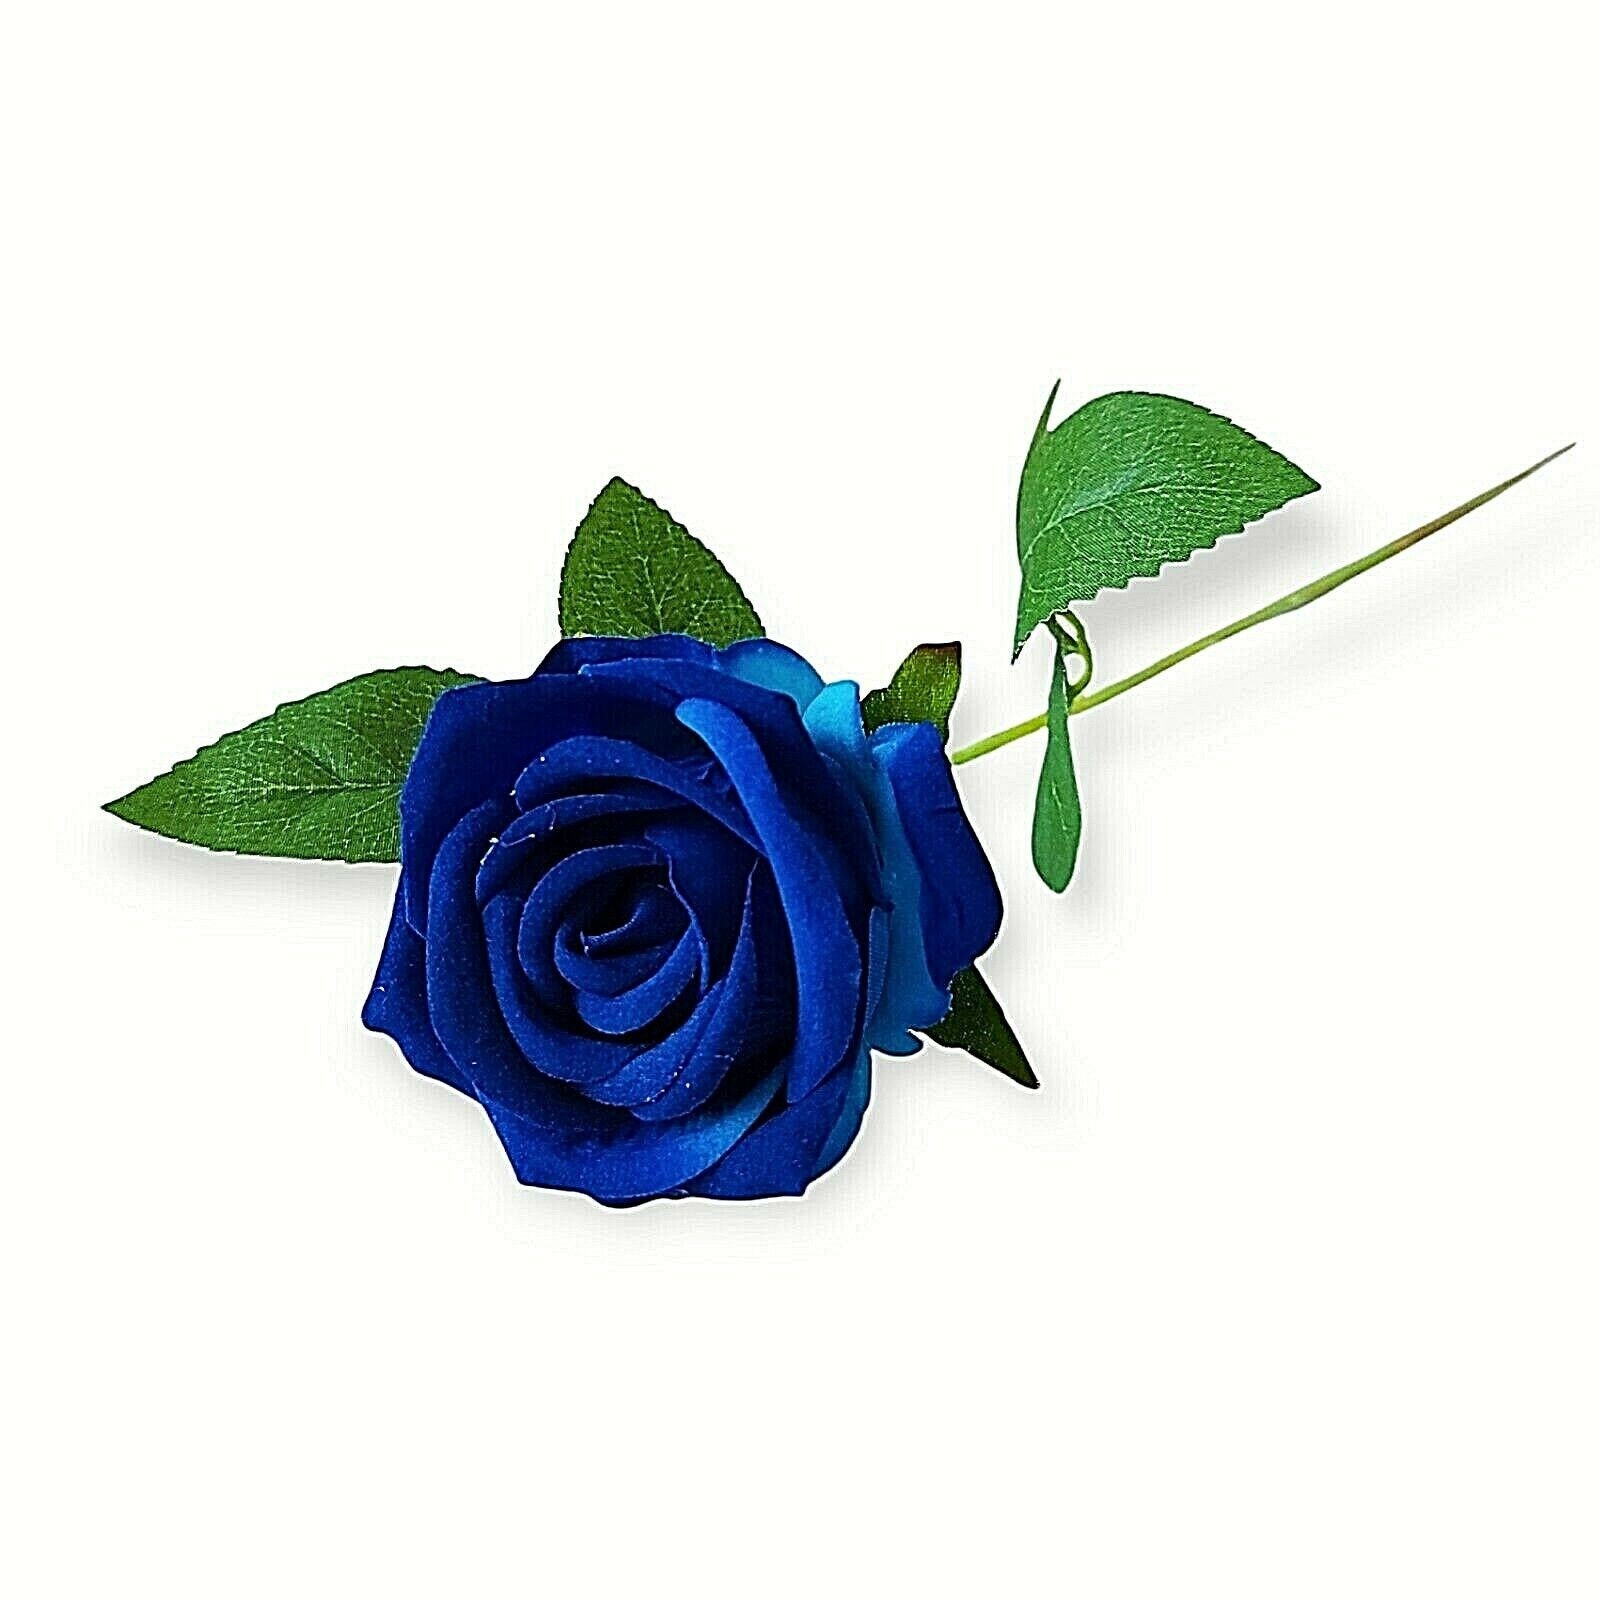 Single Paper Rose, Paper Roses, Gift for Her, Everlasting Flowers,  Alternative Valentine, Long Stem Rose, Red Rose, Birthday Gift 